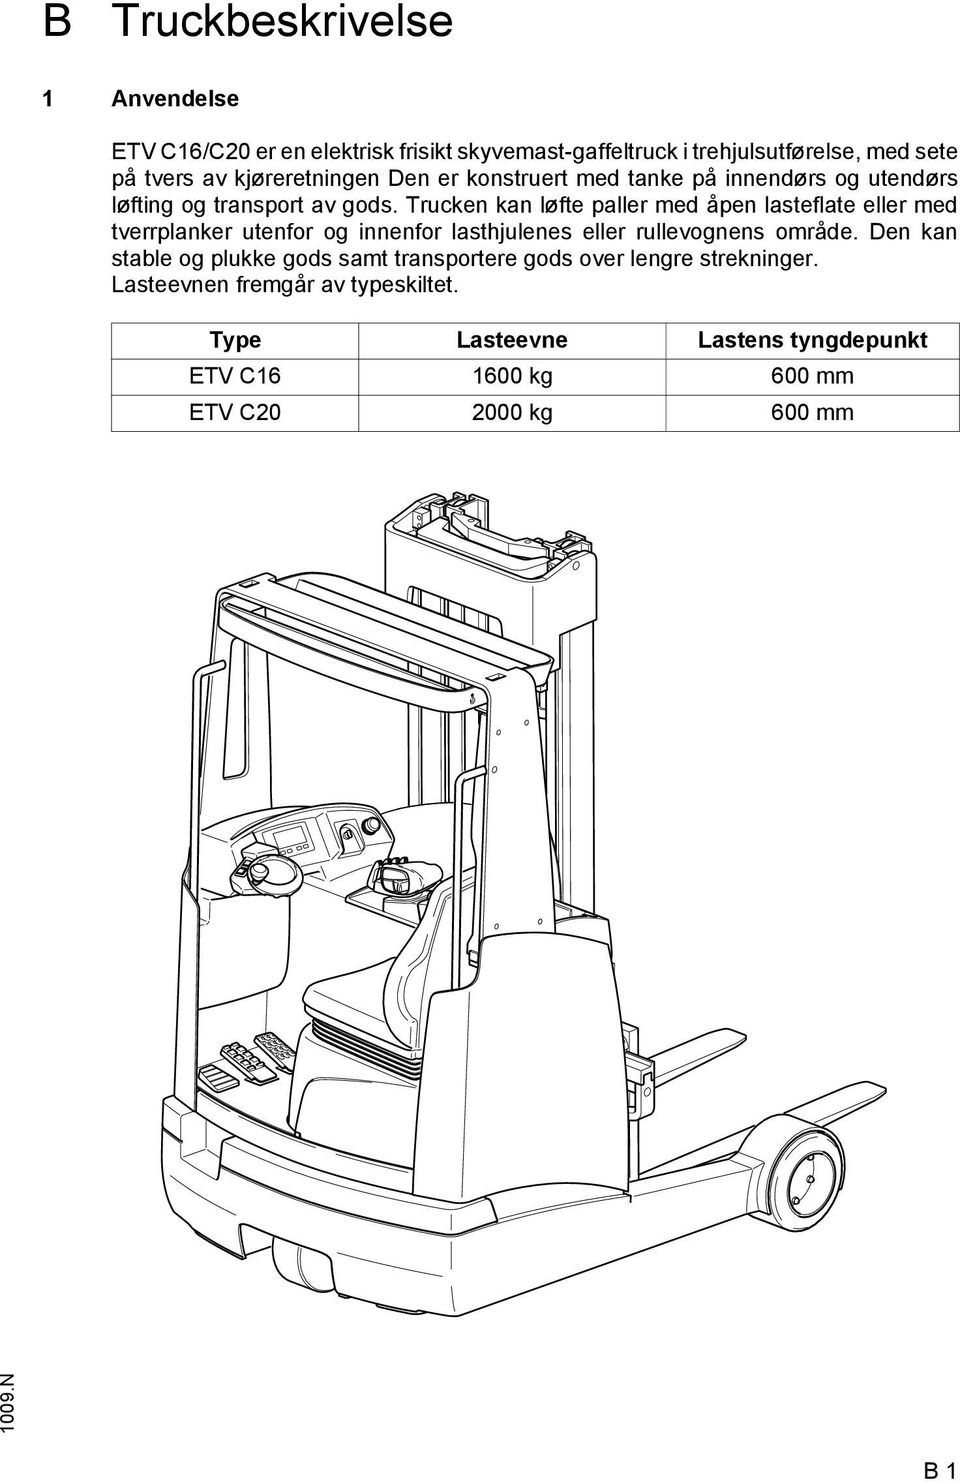 Trucken kan løfte paller med åpen lasteflate eller med tverrplanker utenfor og innenfor lasthjulenes eller rullevognens område.